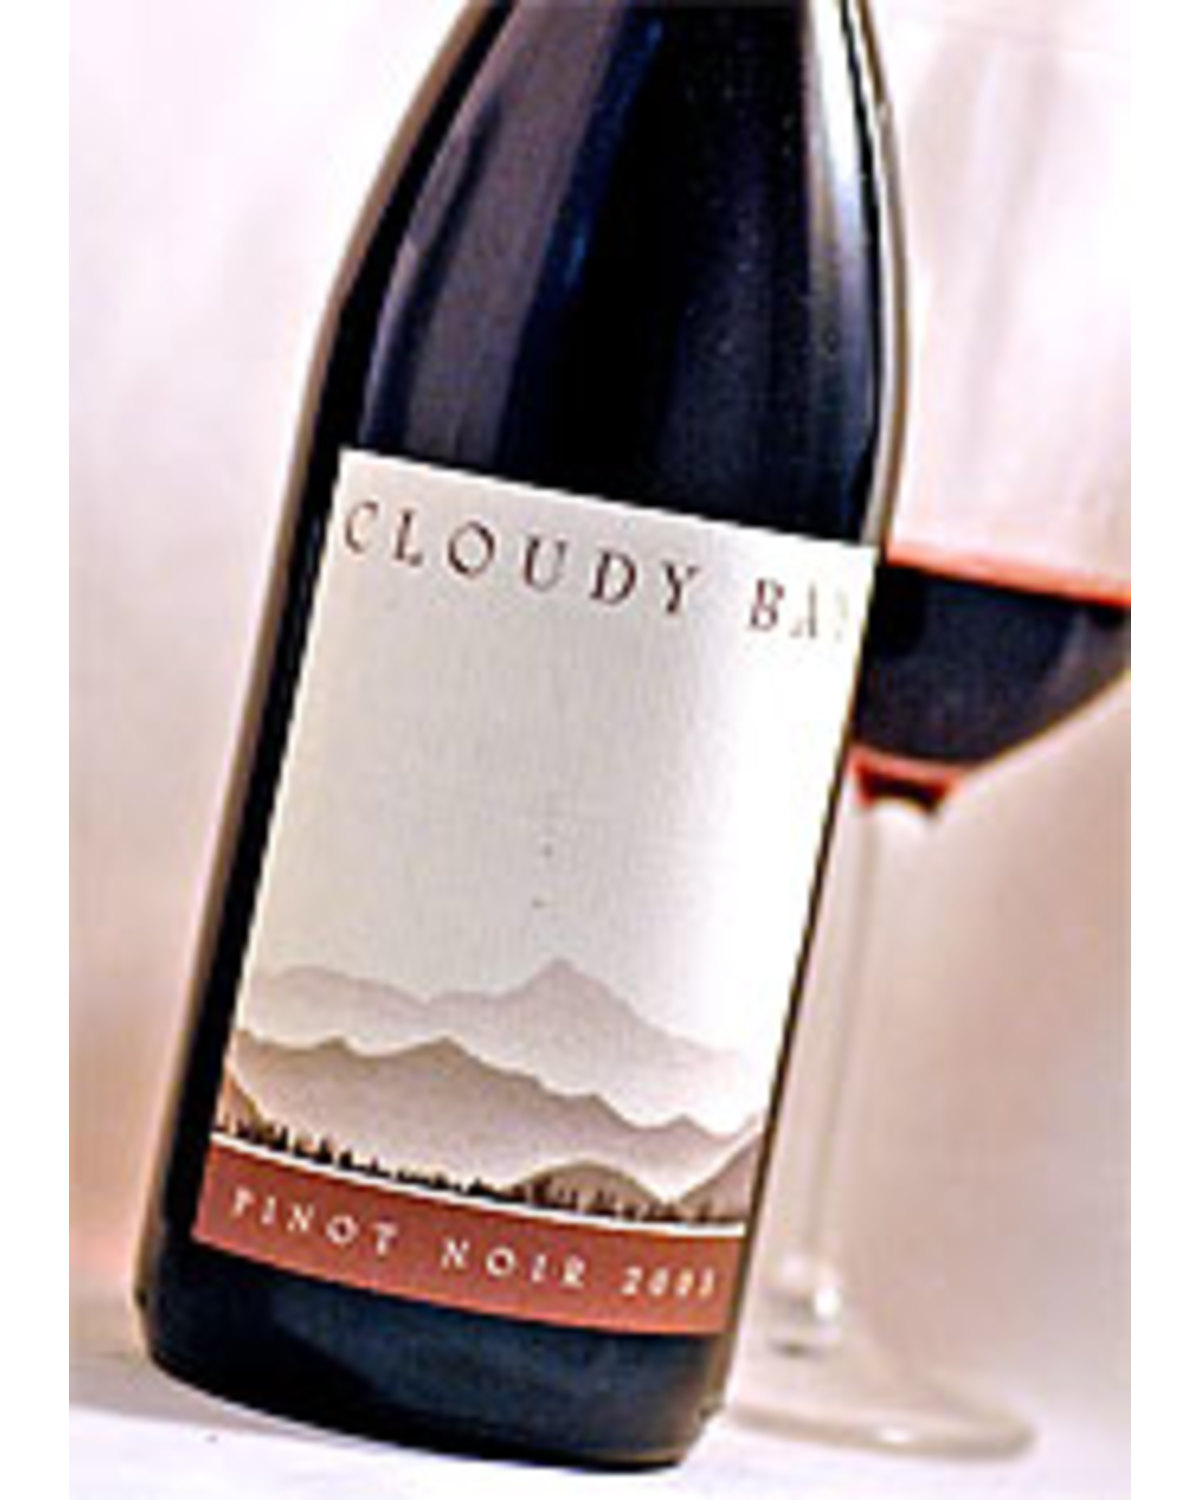 Order Cloudy Bay Pinot Noir